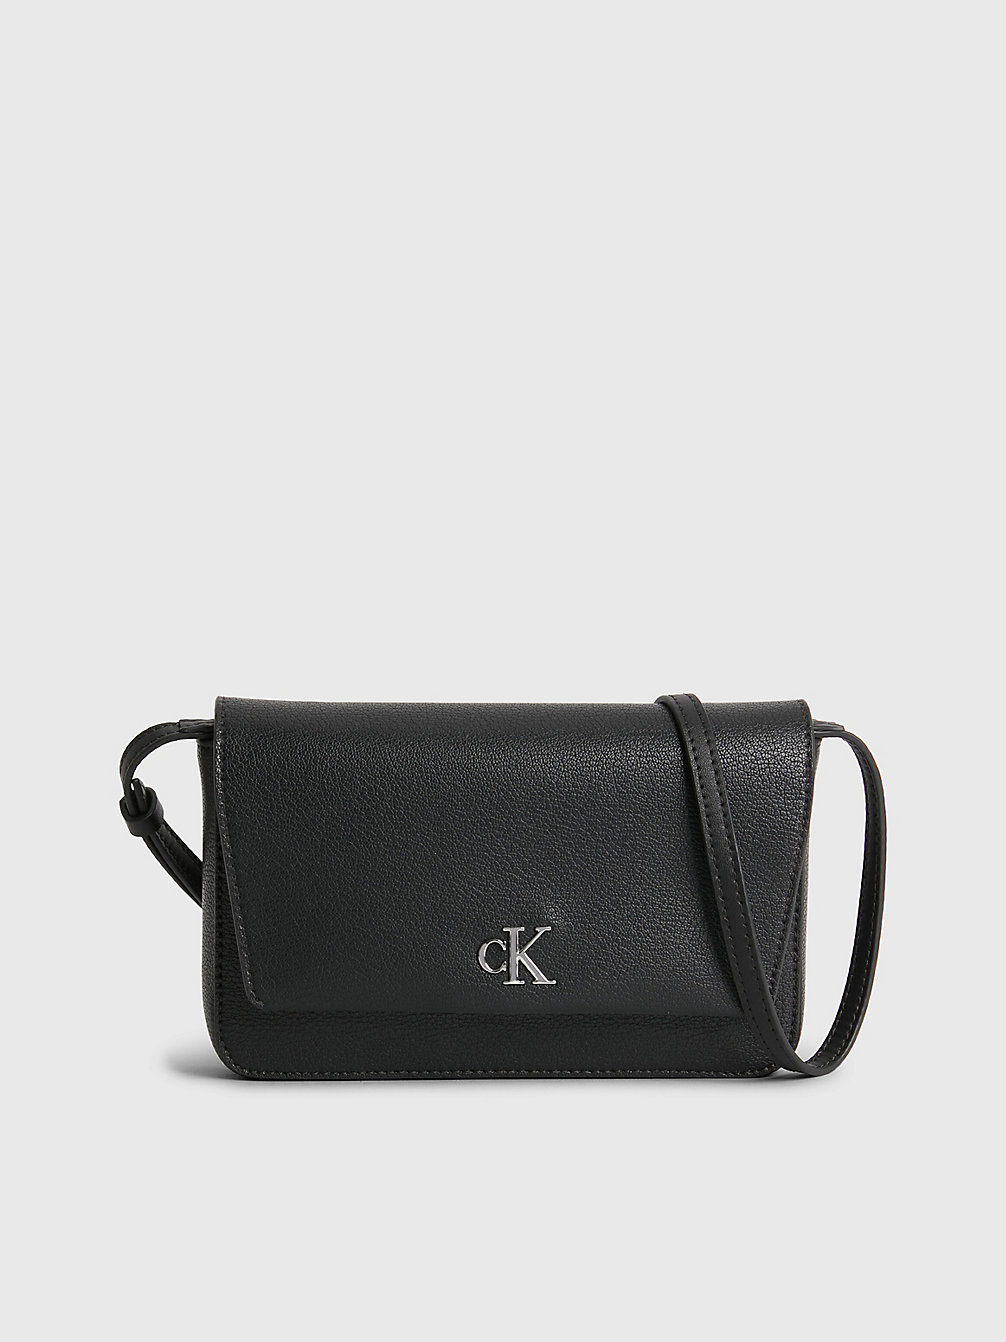 BLACK > Portemonnaie-Tasche Aus Recyceltem Material > undefined Damen - Calvin Klein